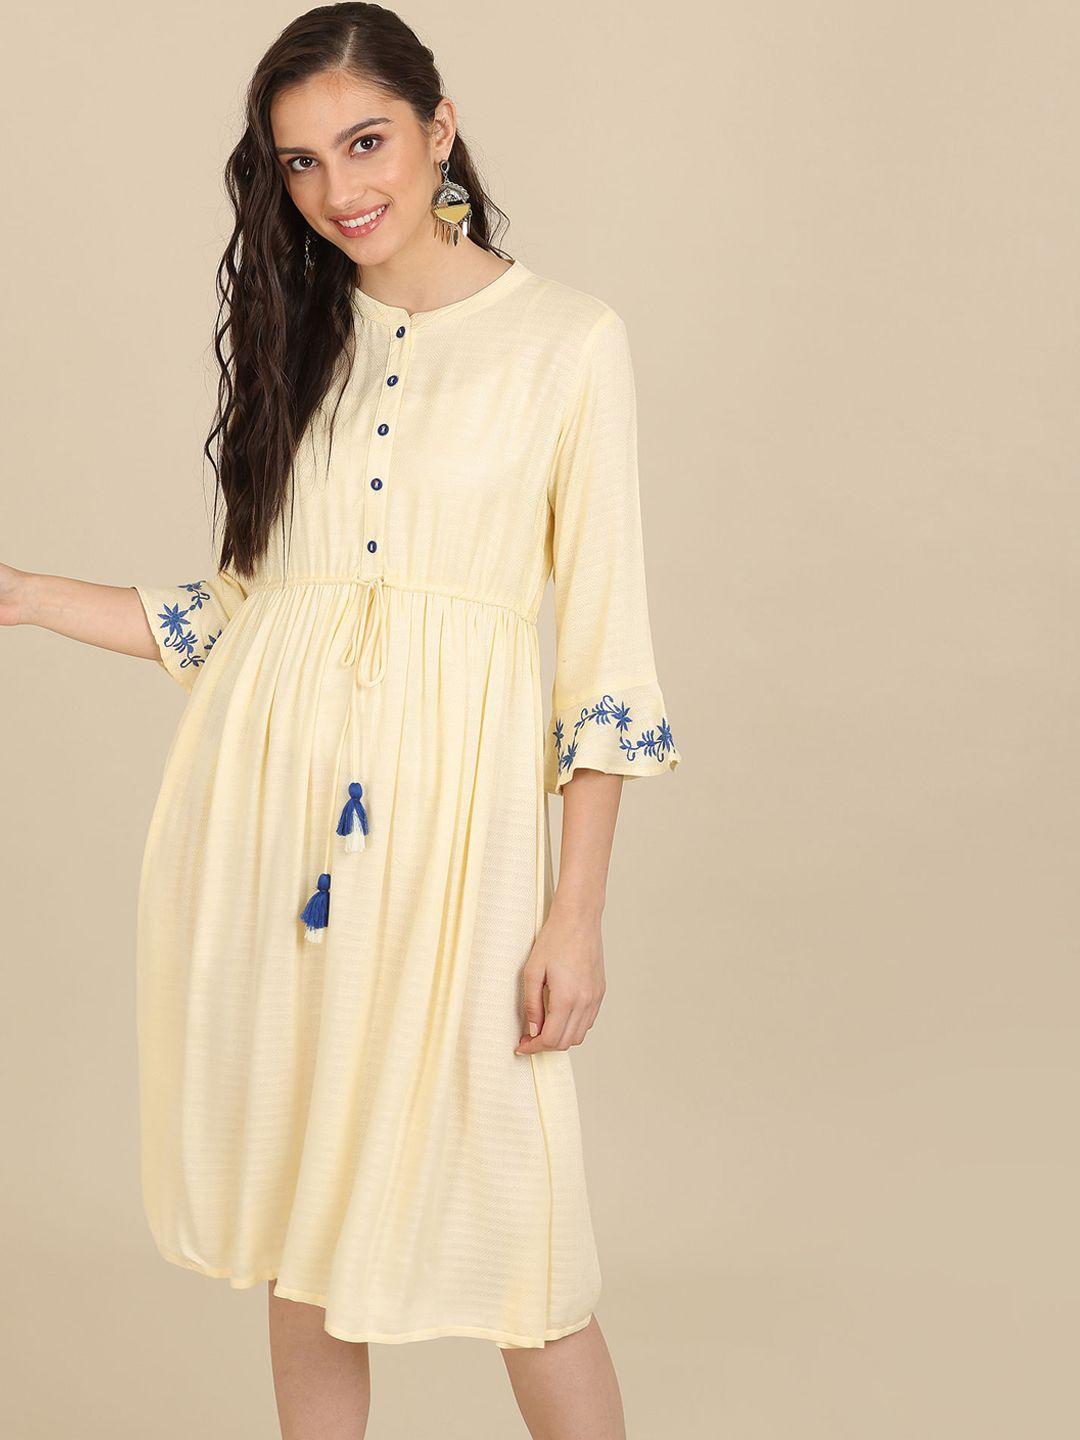 karigari-white-a-line-dress